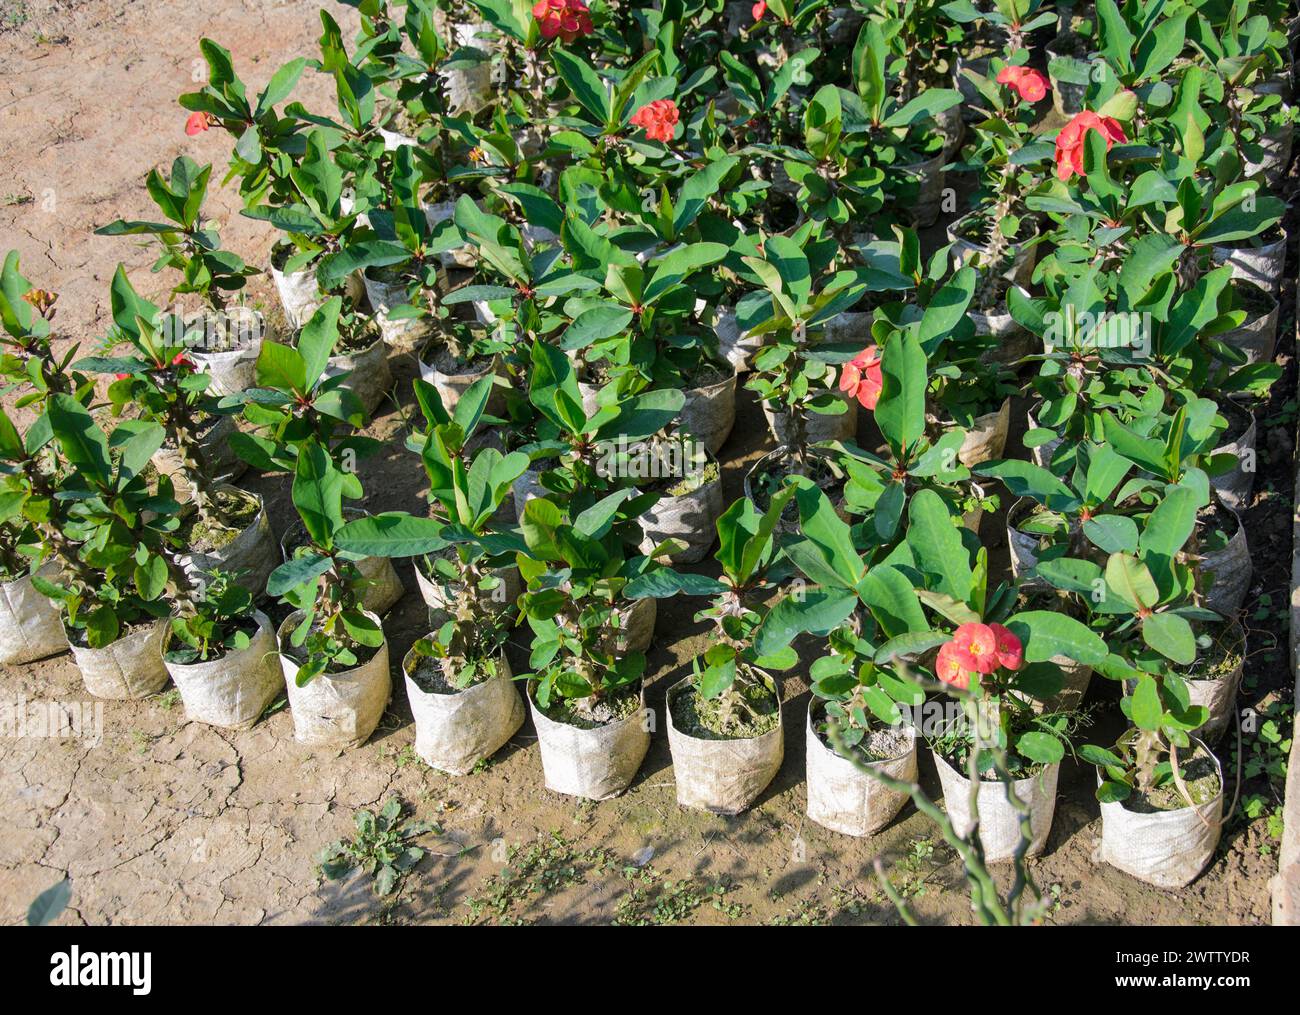 Euphorbia flowers plants growing in the garden Stock Photo